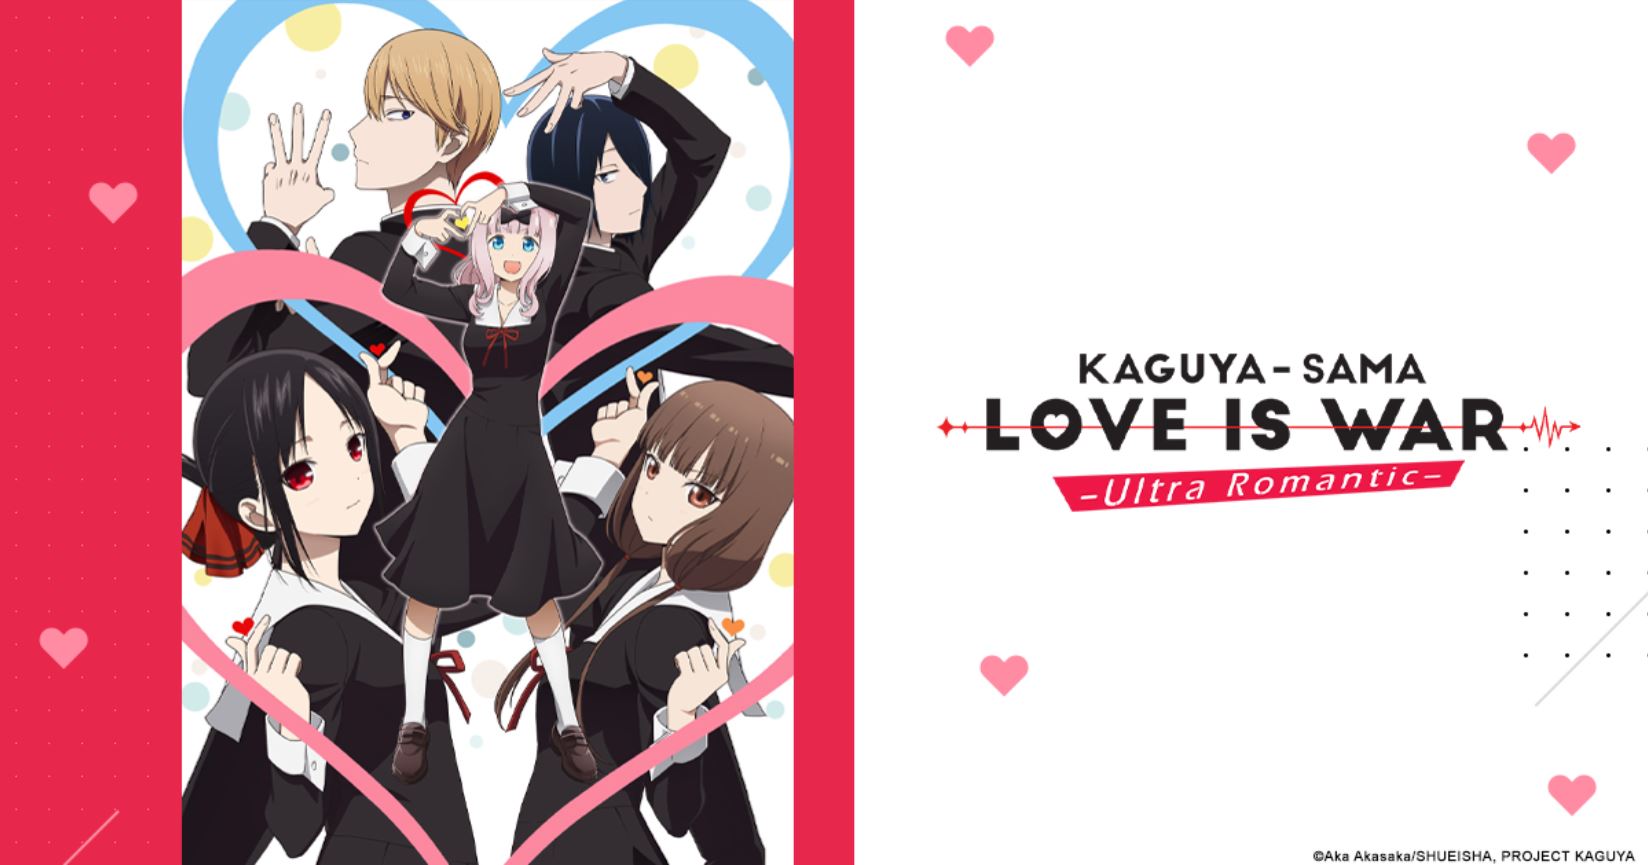 Oglądaj Kaguya-sama: Love Is War - Ultra Romantic